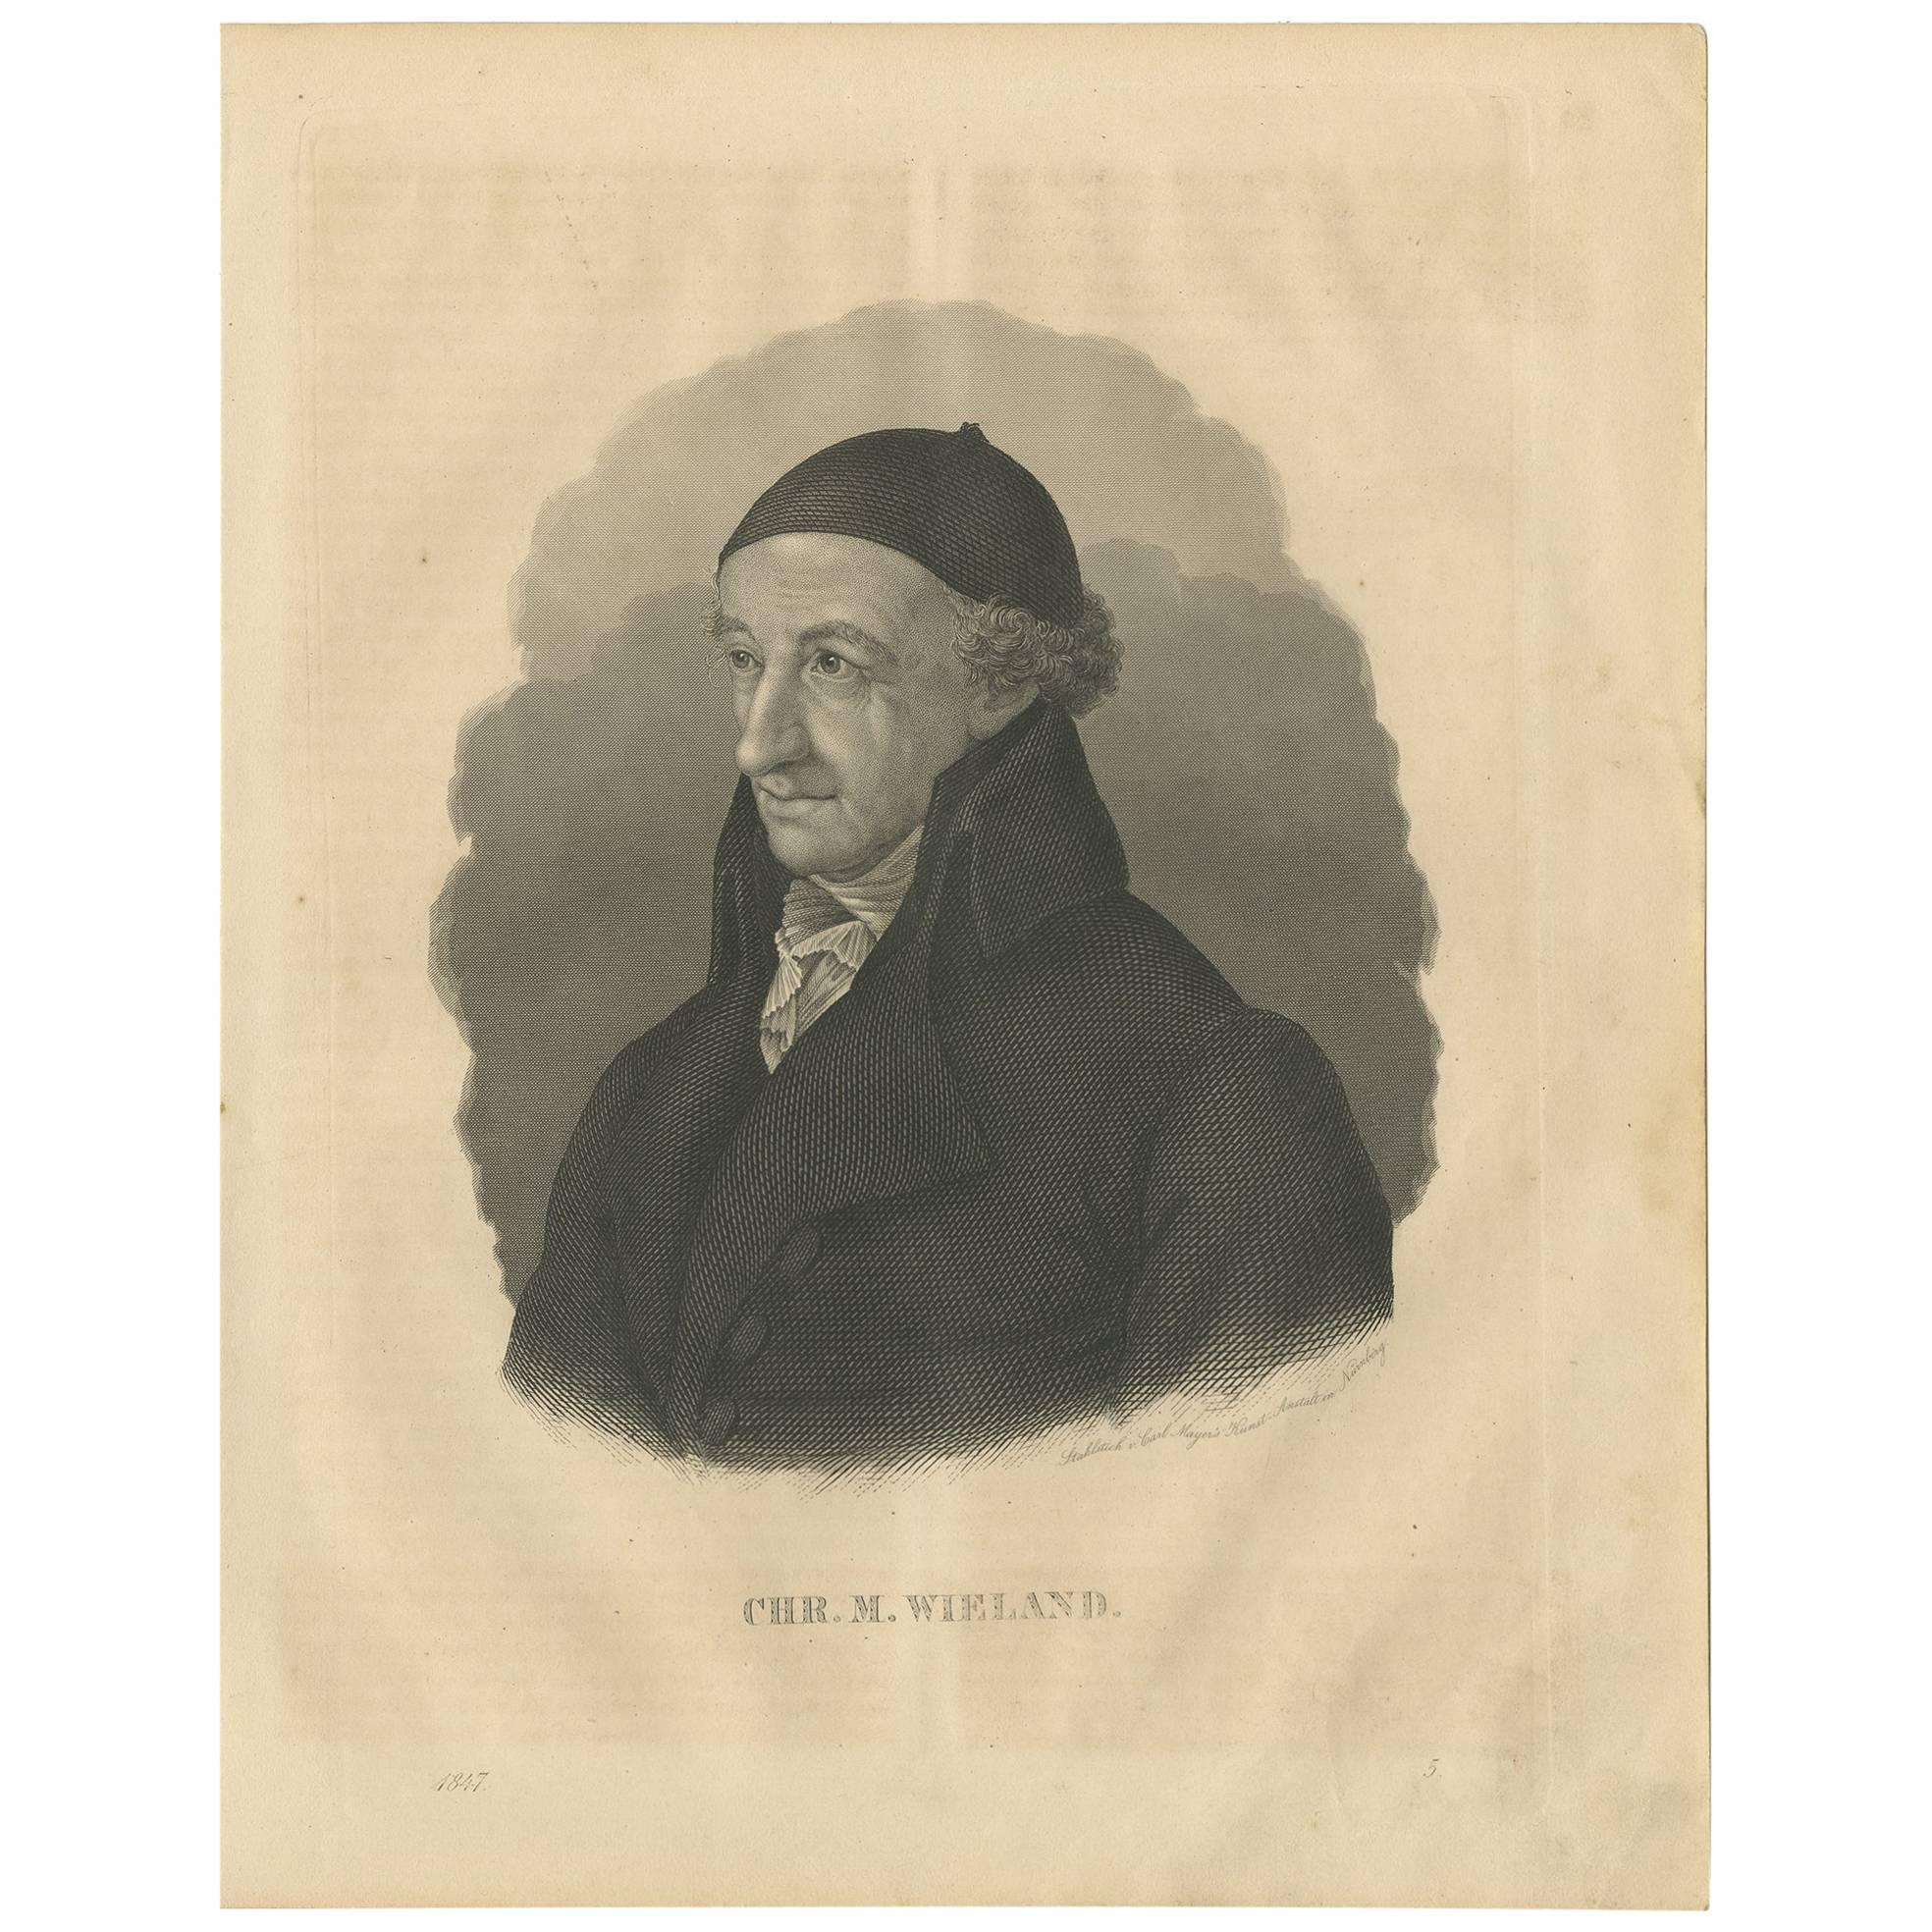 Antikes Porträt von Christoph Martin Wieland von C. Meyer, 1847